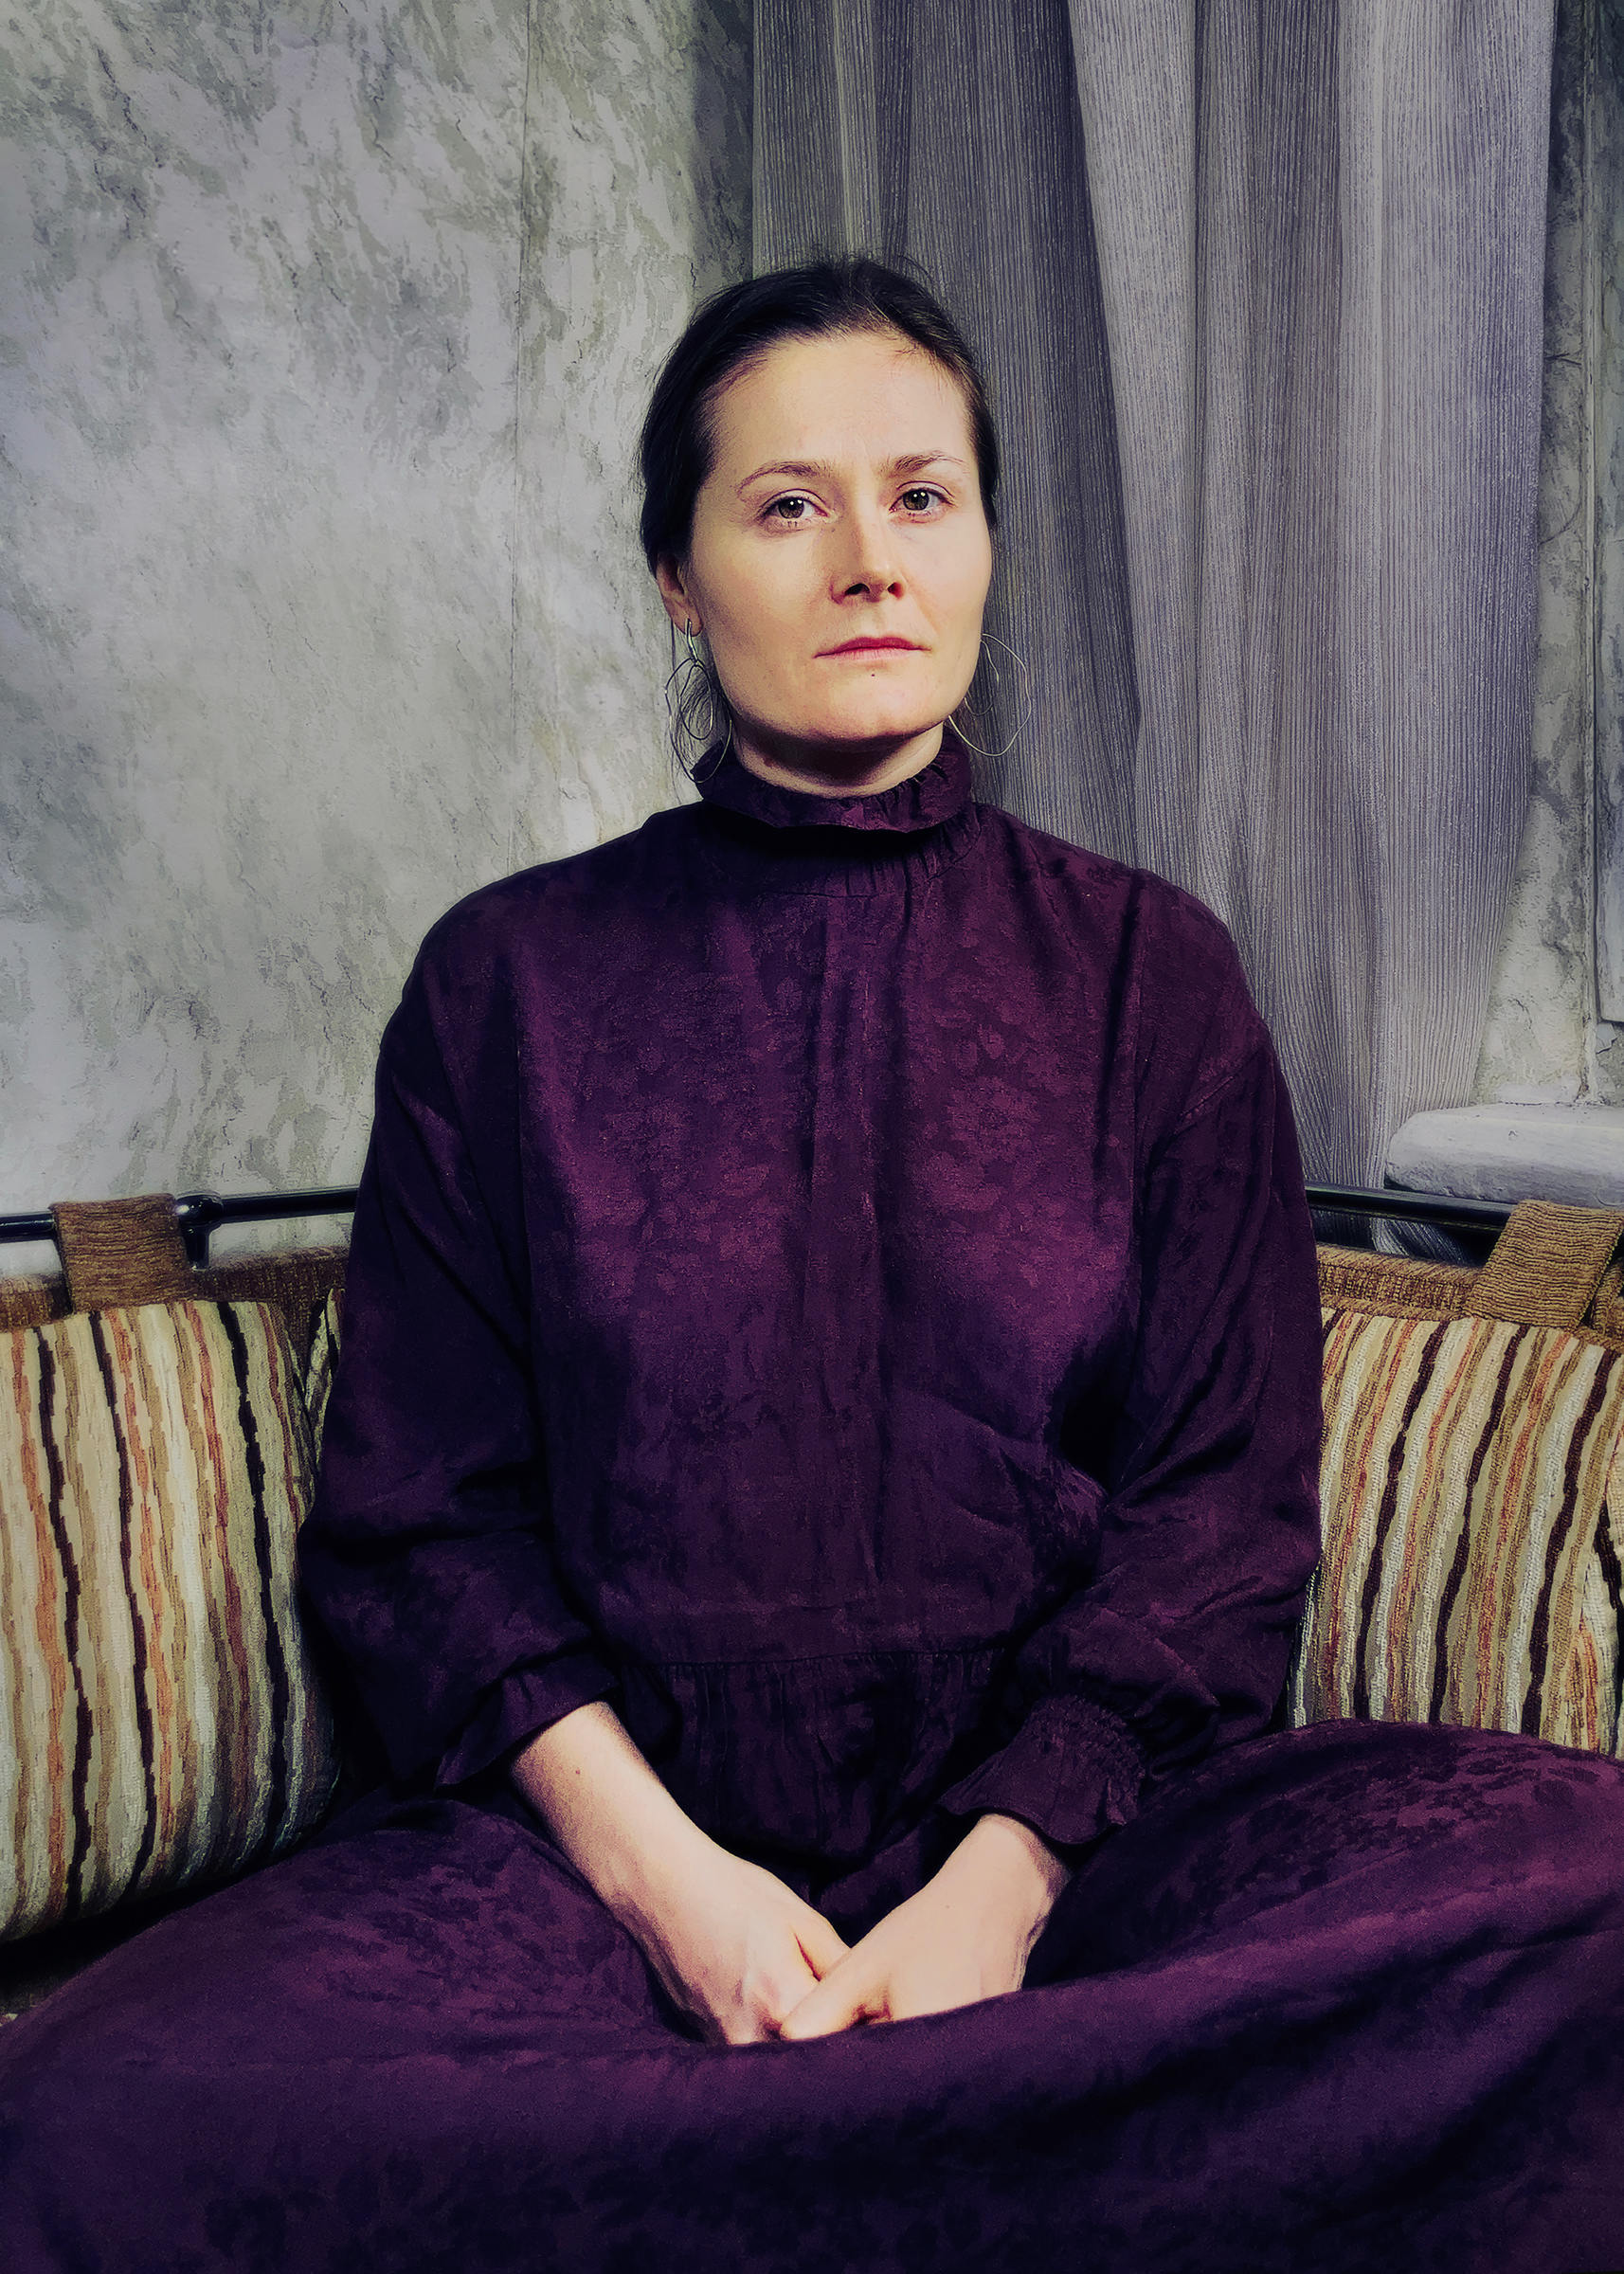 Oksana Vasyakina, photographed during a remote portrait session in December. (Dina Litovsky for TIME)